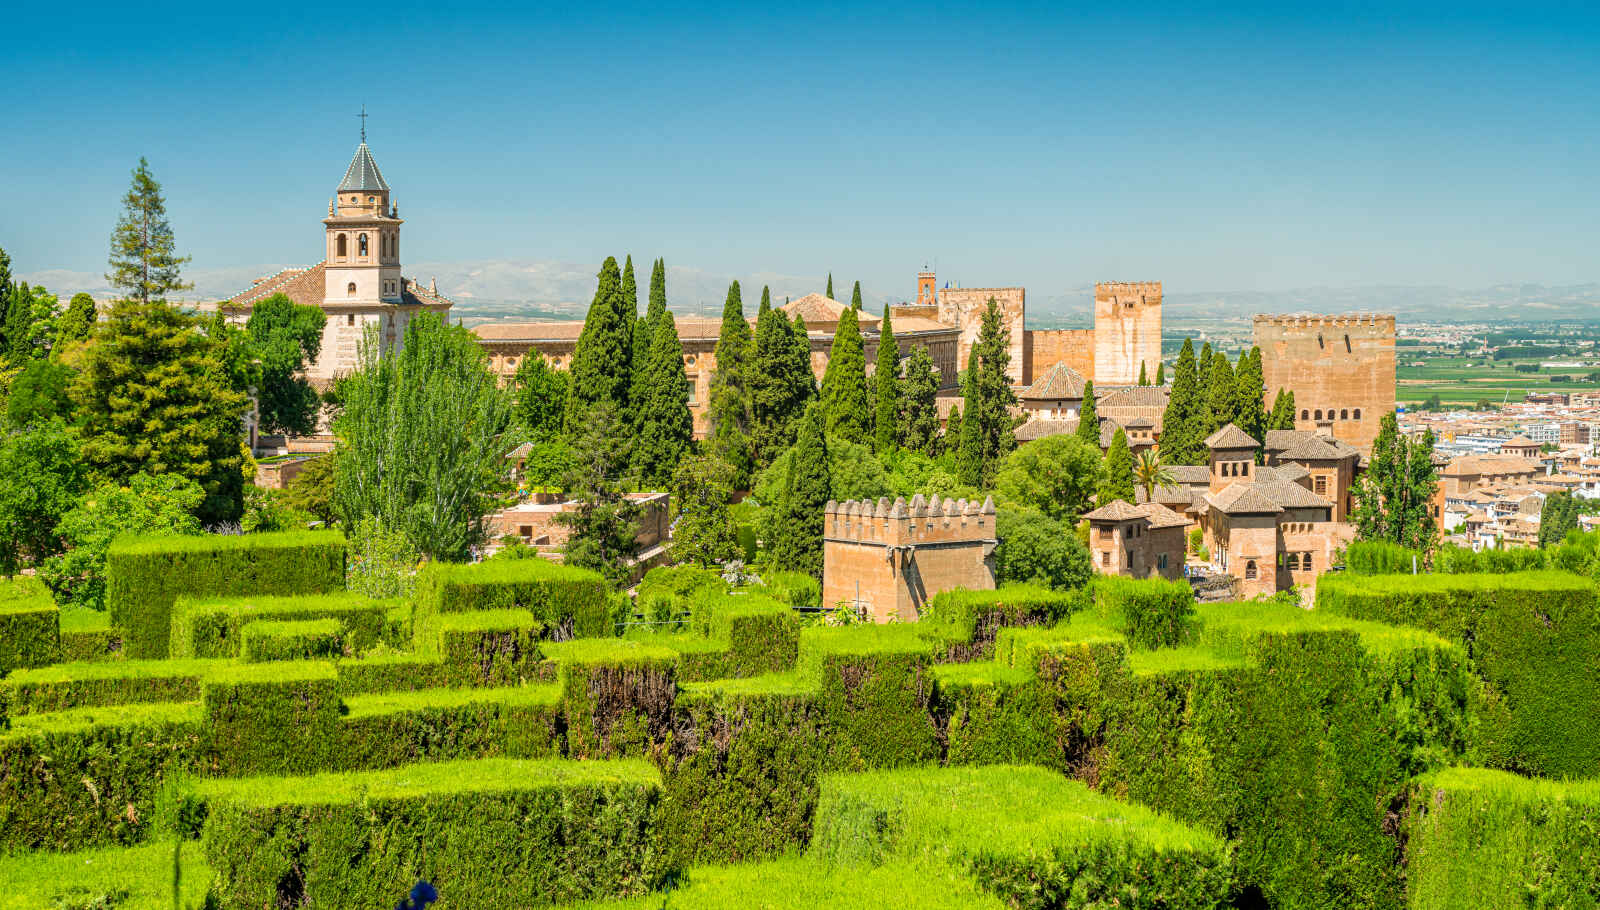 Vue du palais de l'Alhambra Palace des jardins du Generalife, Grenade, Espagne